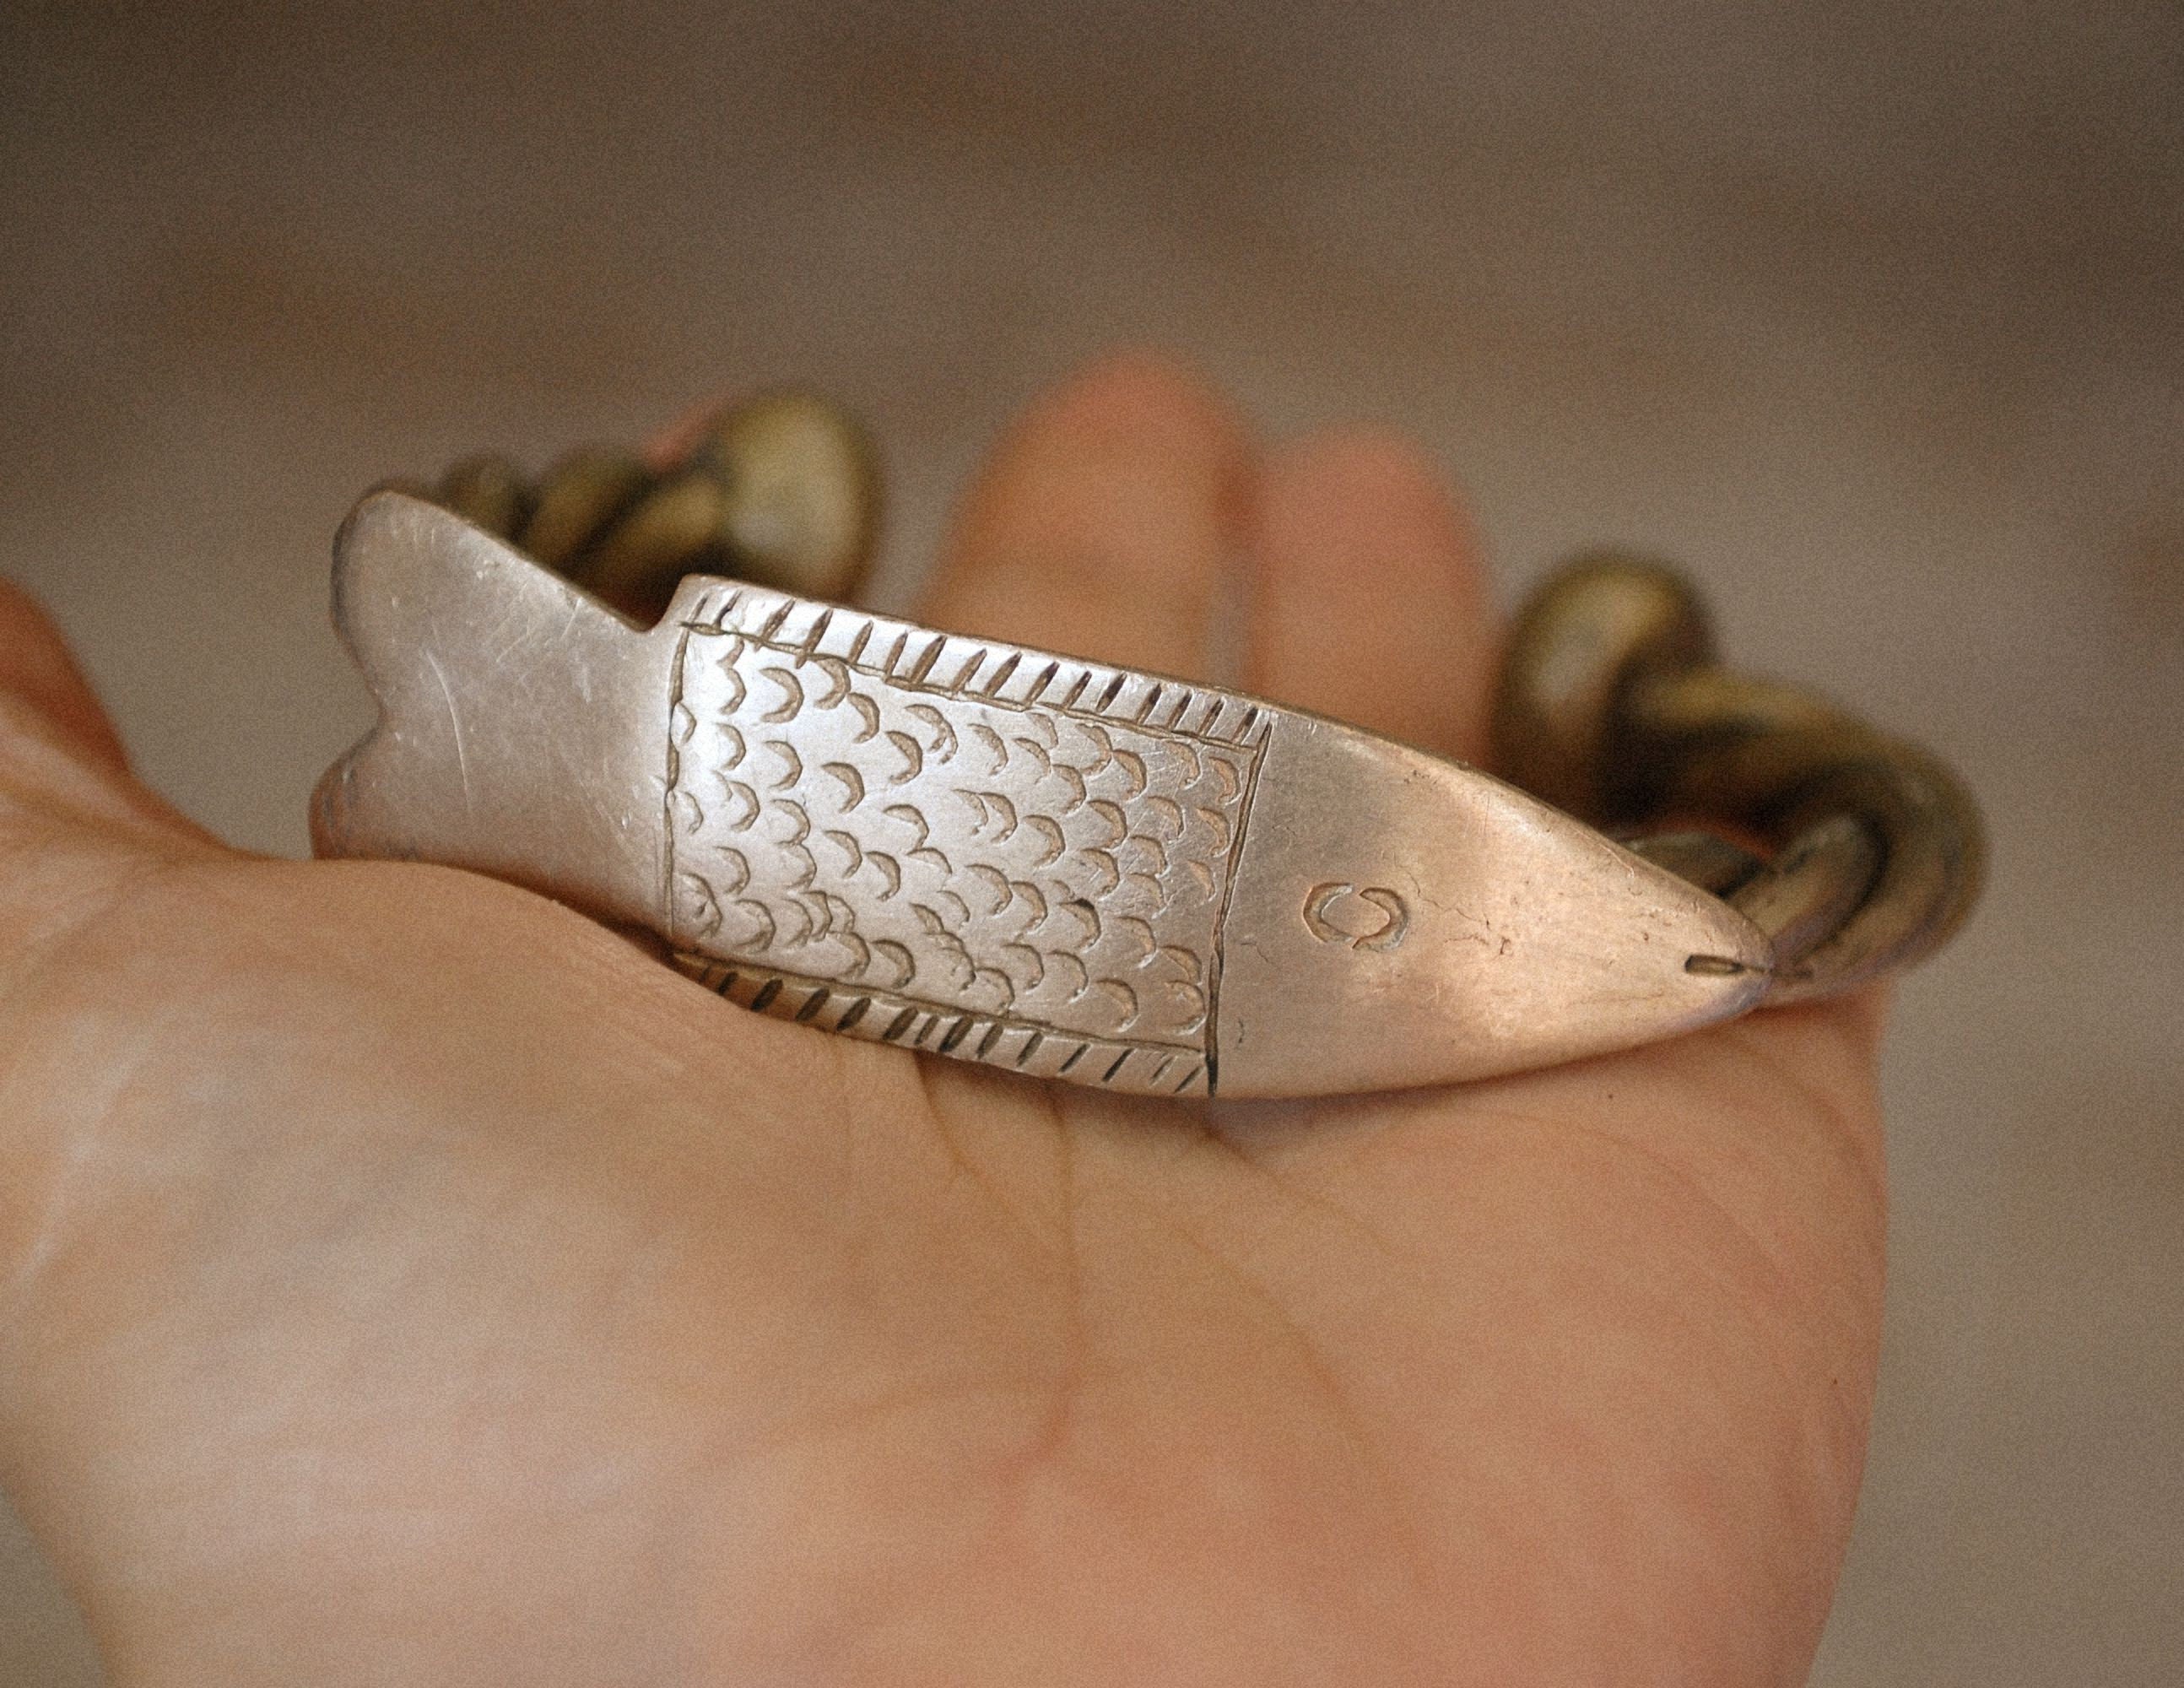 Old Fulani Fish Bracelet from Mali - Old Fulani Silver Bracelet - Tribal African Silver Bracelet - Tuareg Bracelet - Tuareg Jewelry